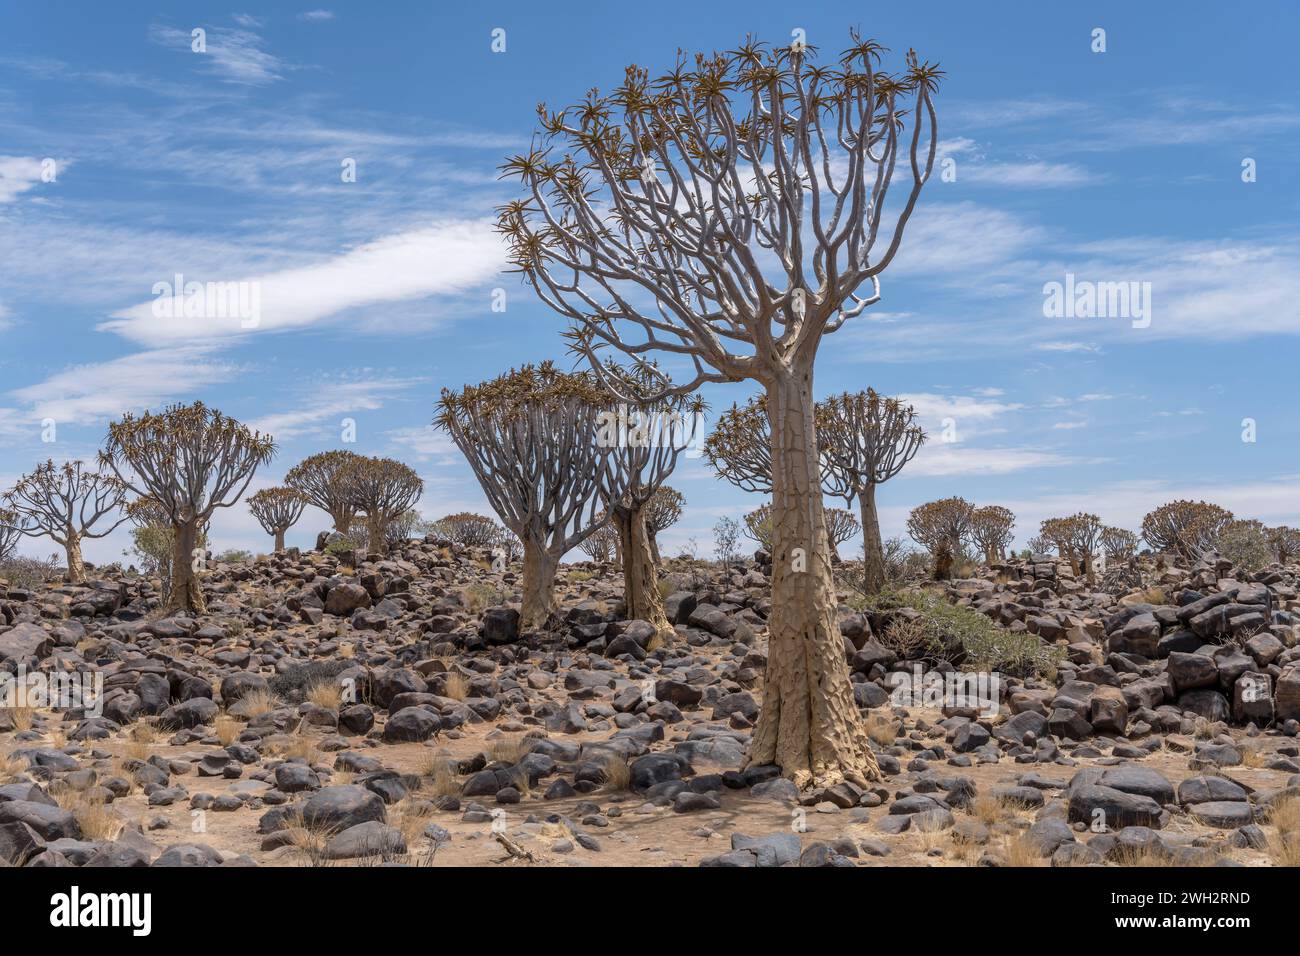 Köcherbäume auf steinigem Boden in der Wüste, aufgenommen im hellen Licht des späten Frühlings im Quivertree Forest, Keetmansoop, Namibia Stockfoto